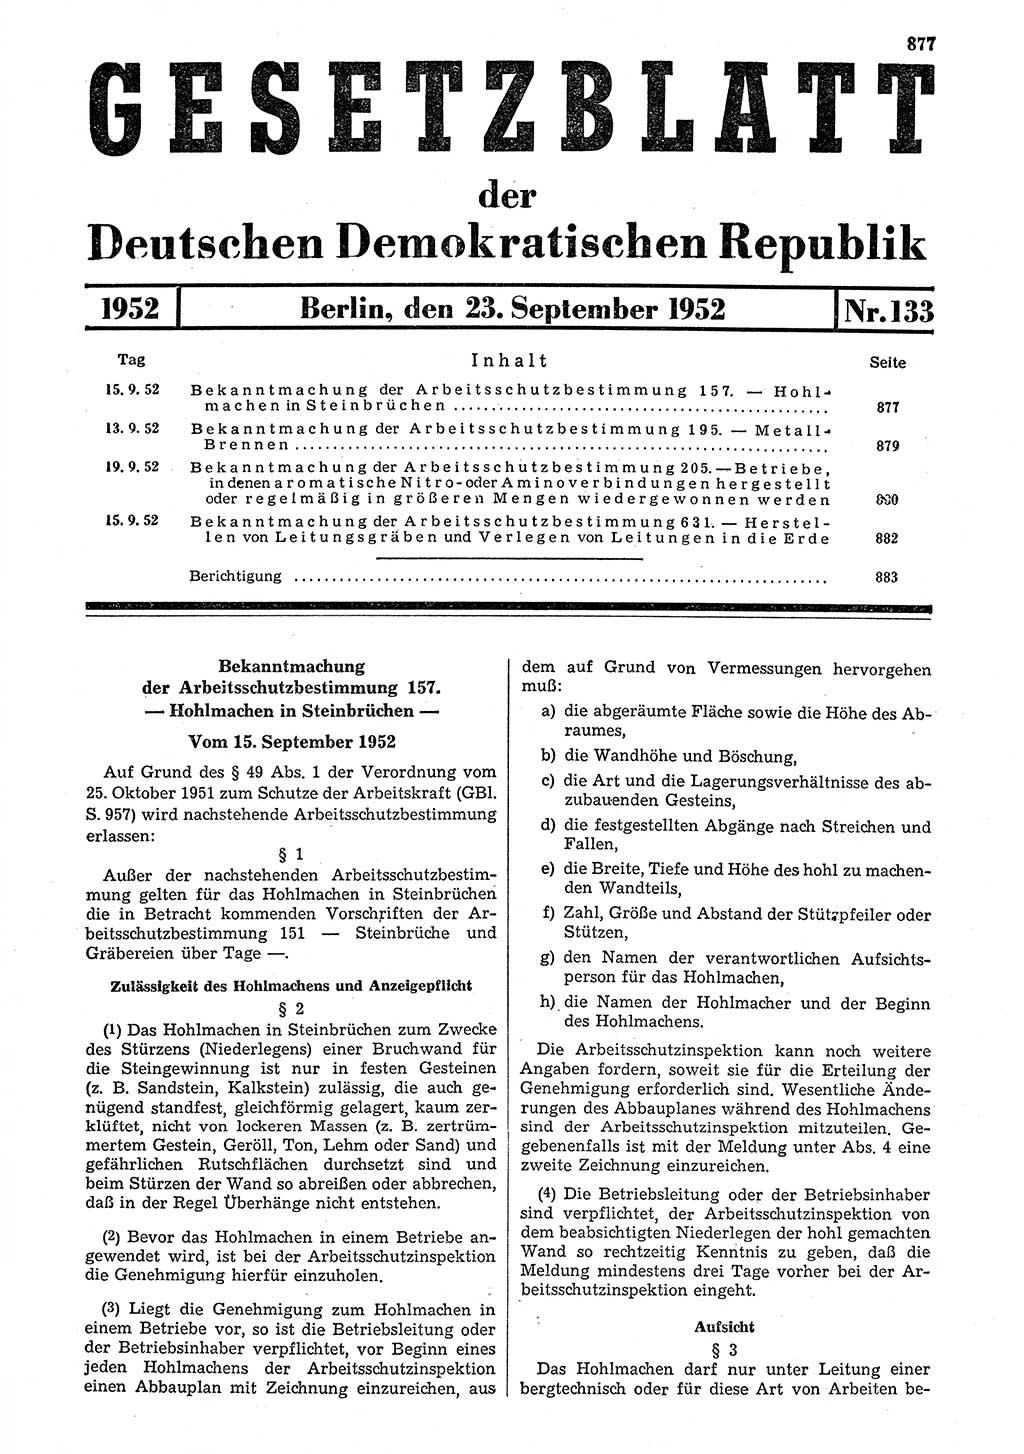 Gesetzblatt (GBl.) der Deutschen Demokratischen Republik (DDR) 1952, Seite 877 (GBl. DDR 1952, S. 877)